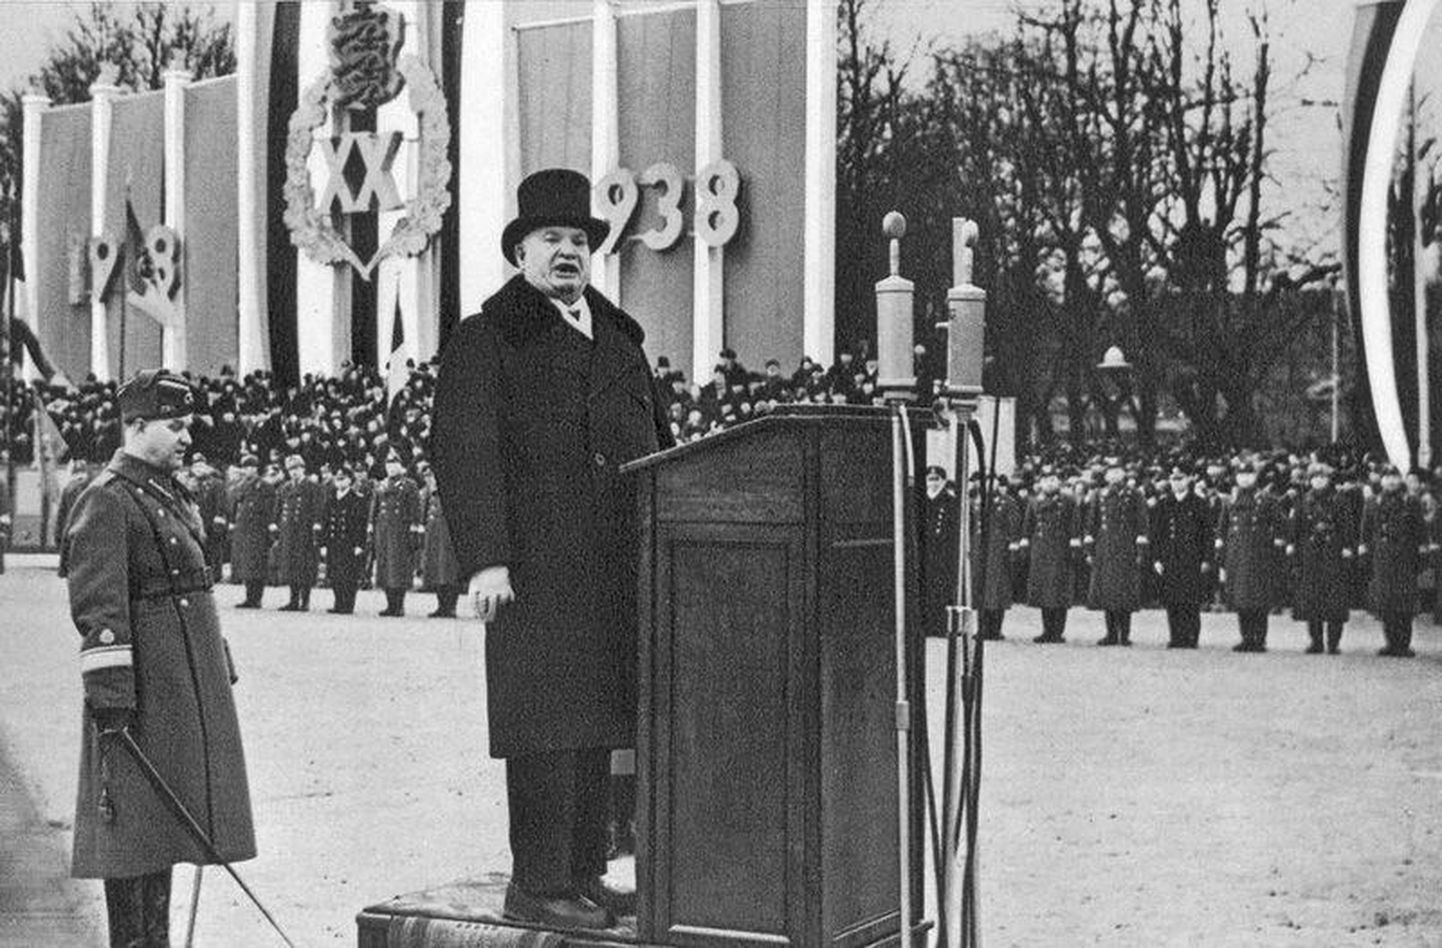 24. veebruar, aasta 1938. President Konstantin Päts peab Eesti Vabariigi aastapäeval kõnet. Mõni aasta hiljem kadus nii oma riik kui selle juht.